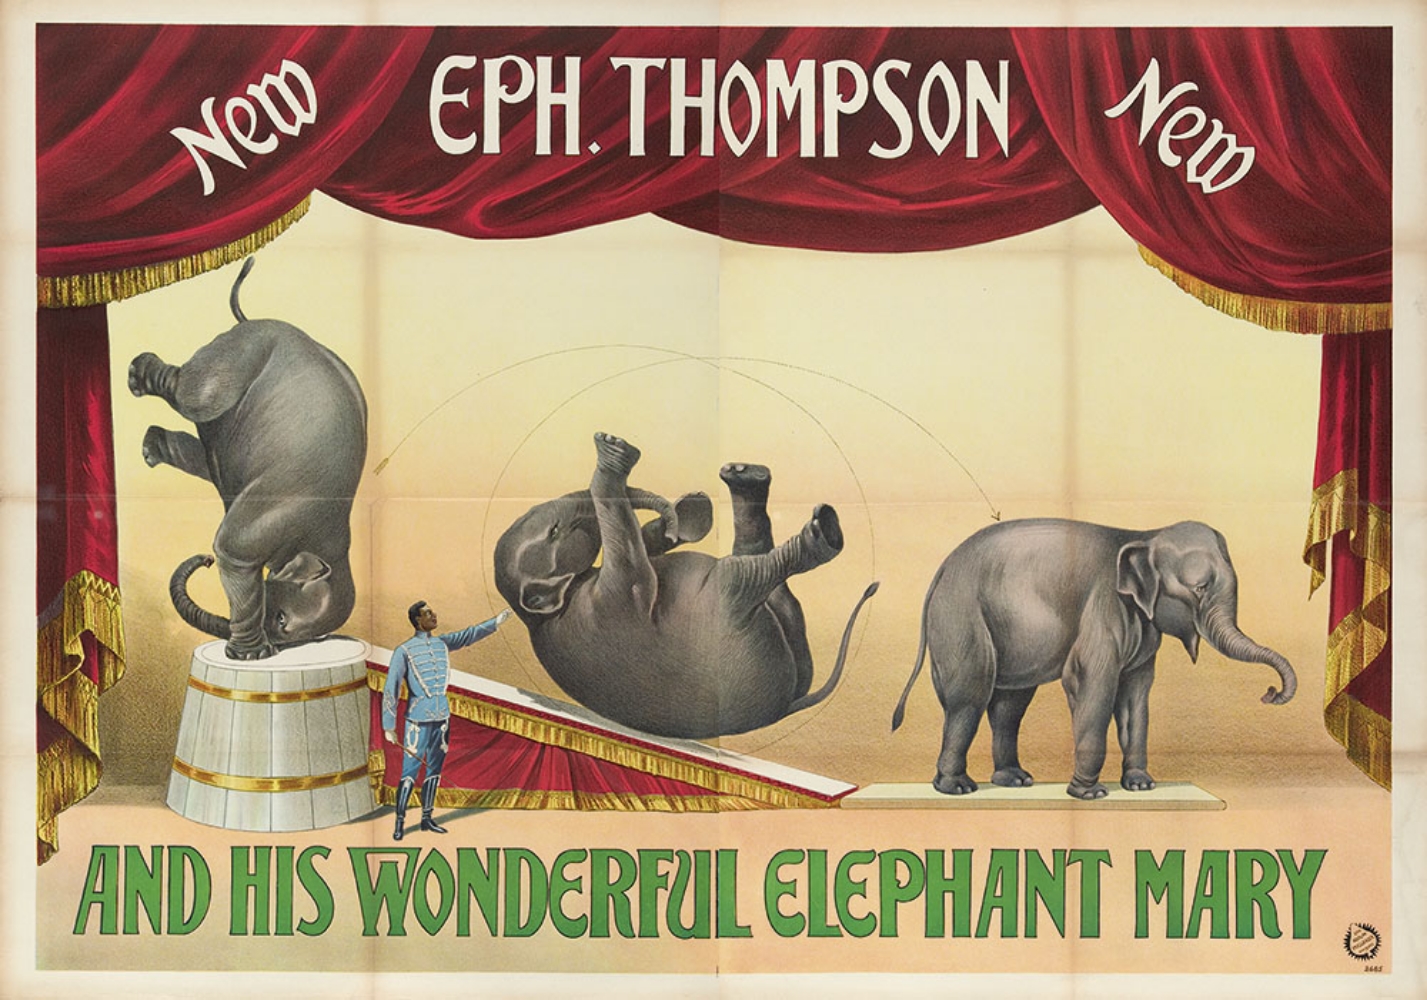 [Elephants] Eph. Thompson and his wonderful elephant Mary